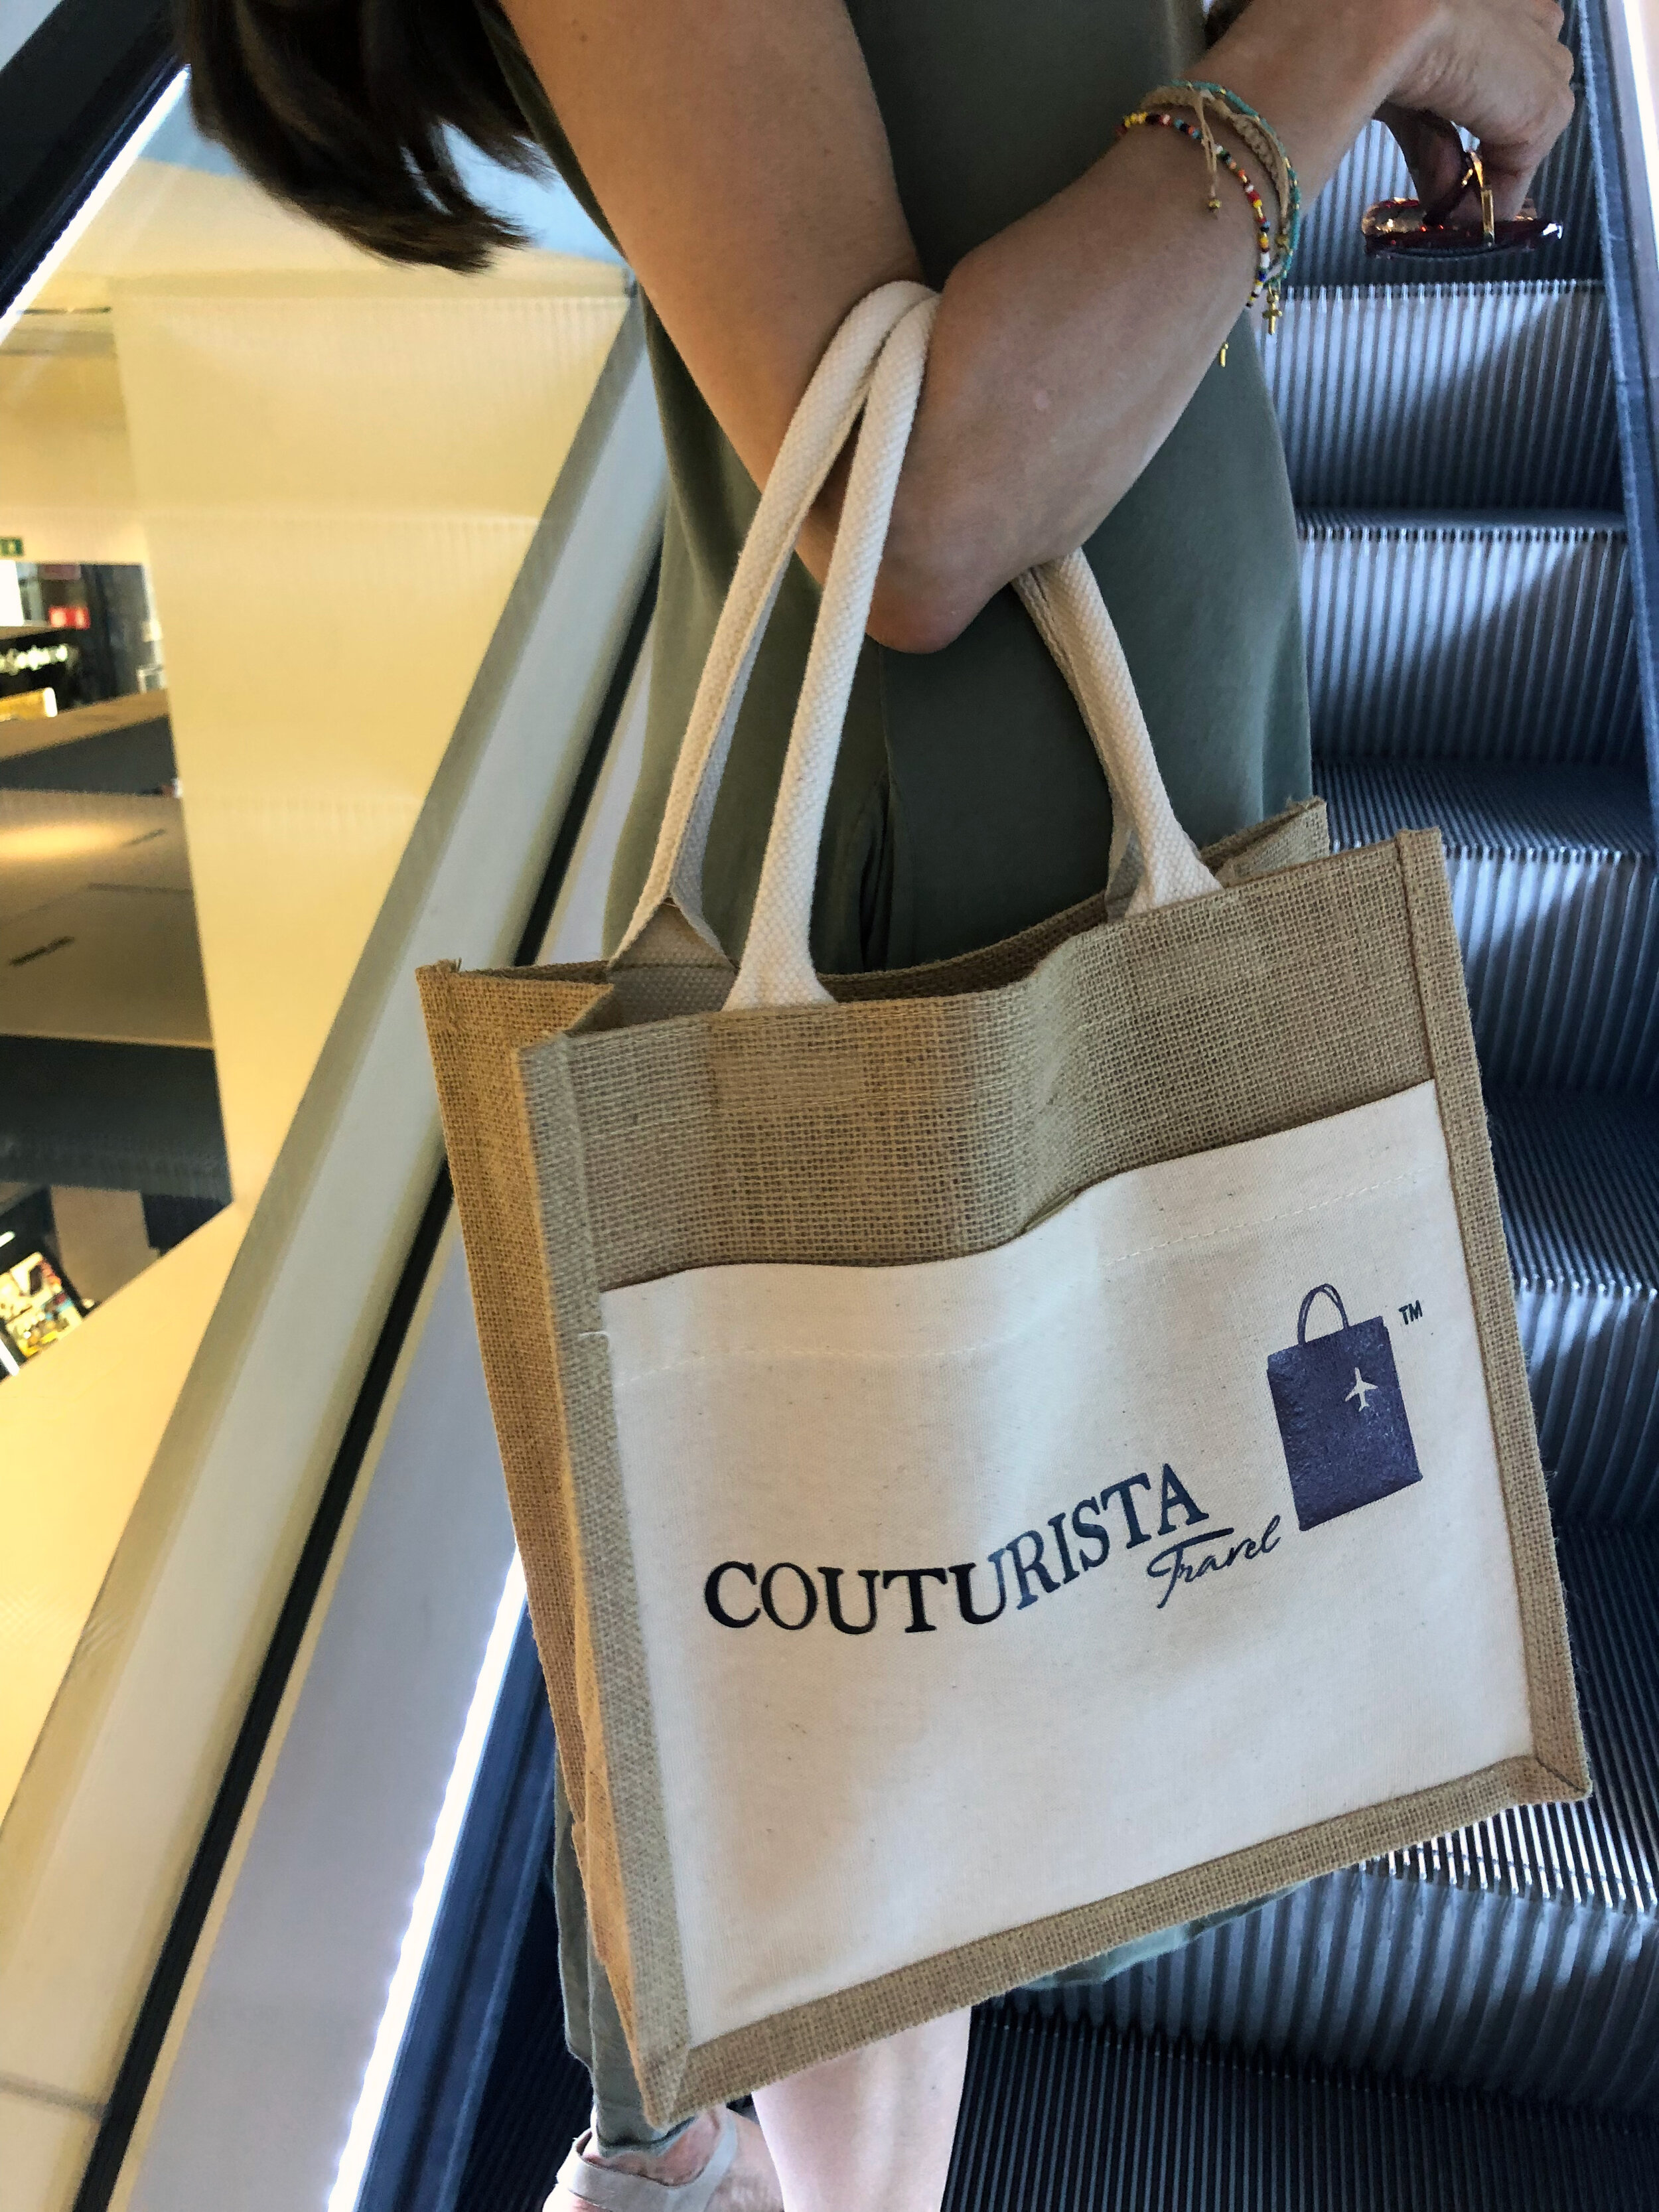 couturista-shopping-bag.jpg